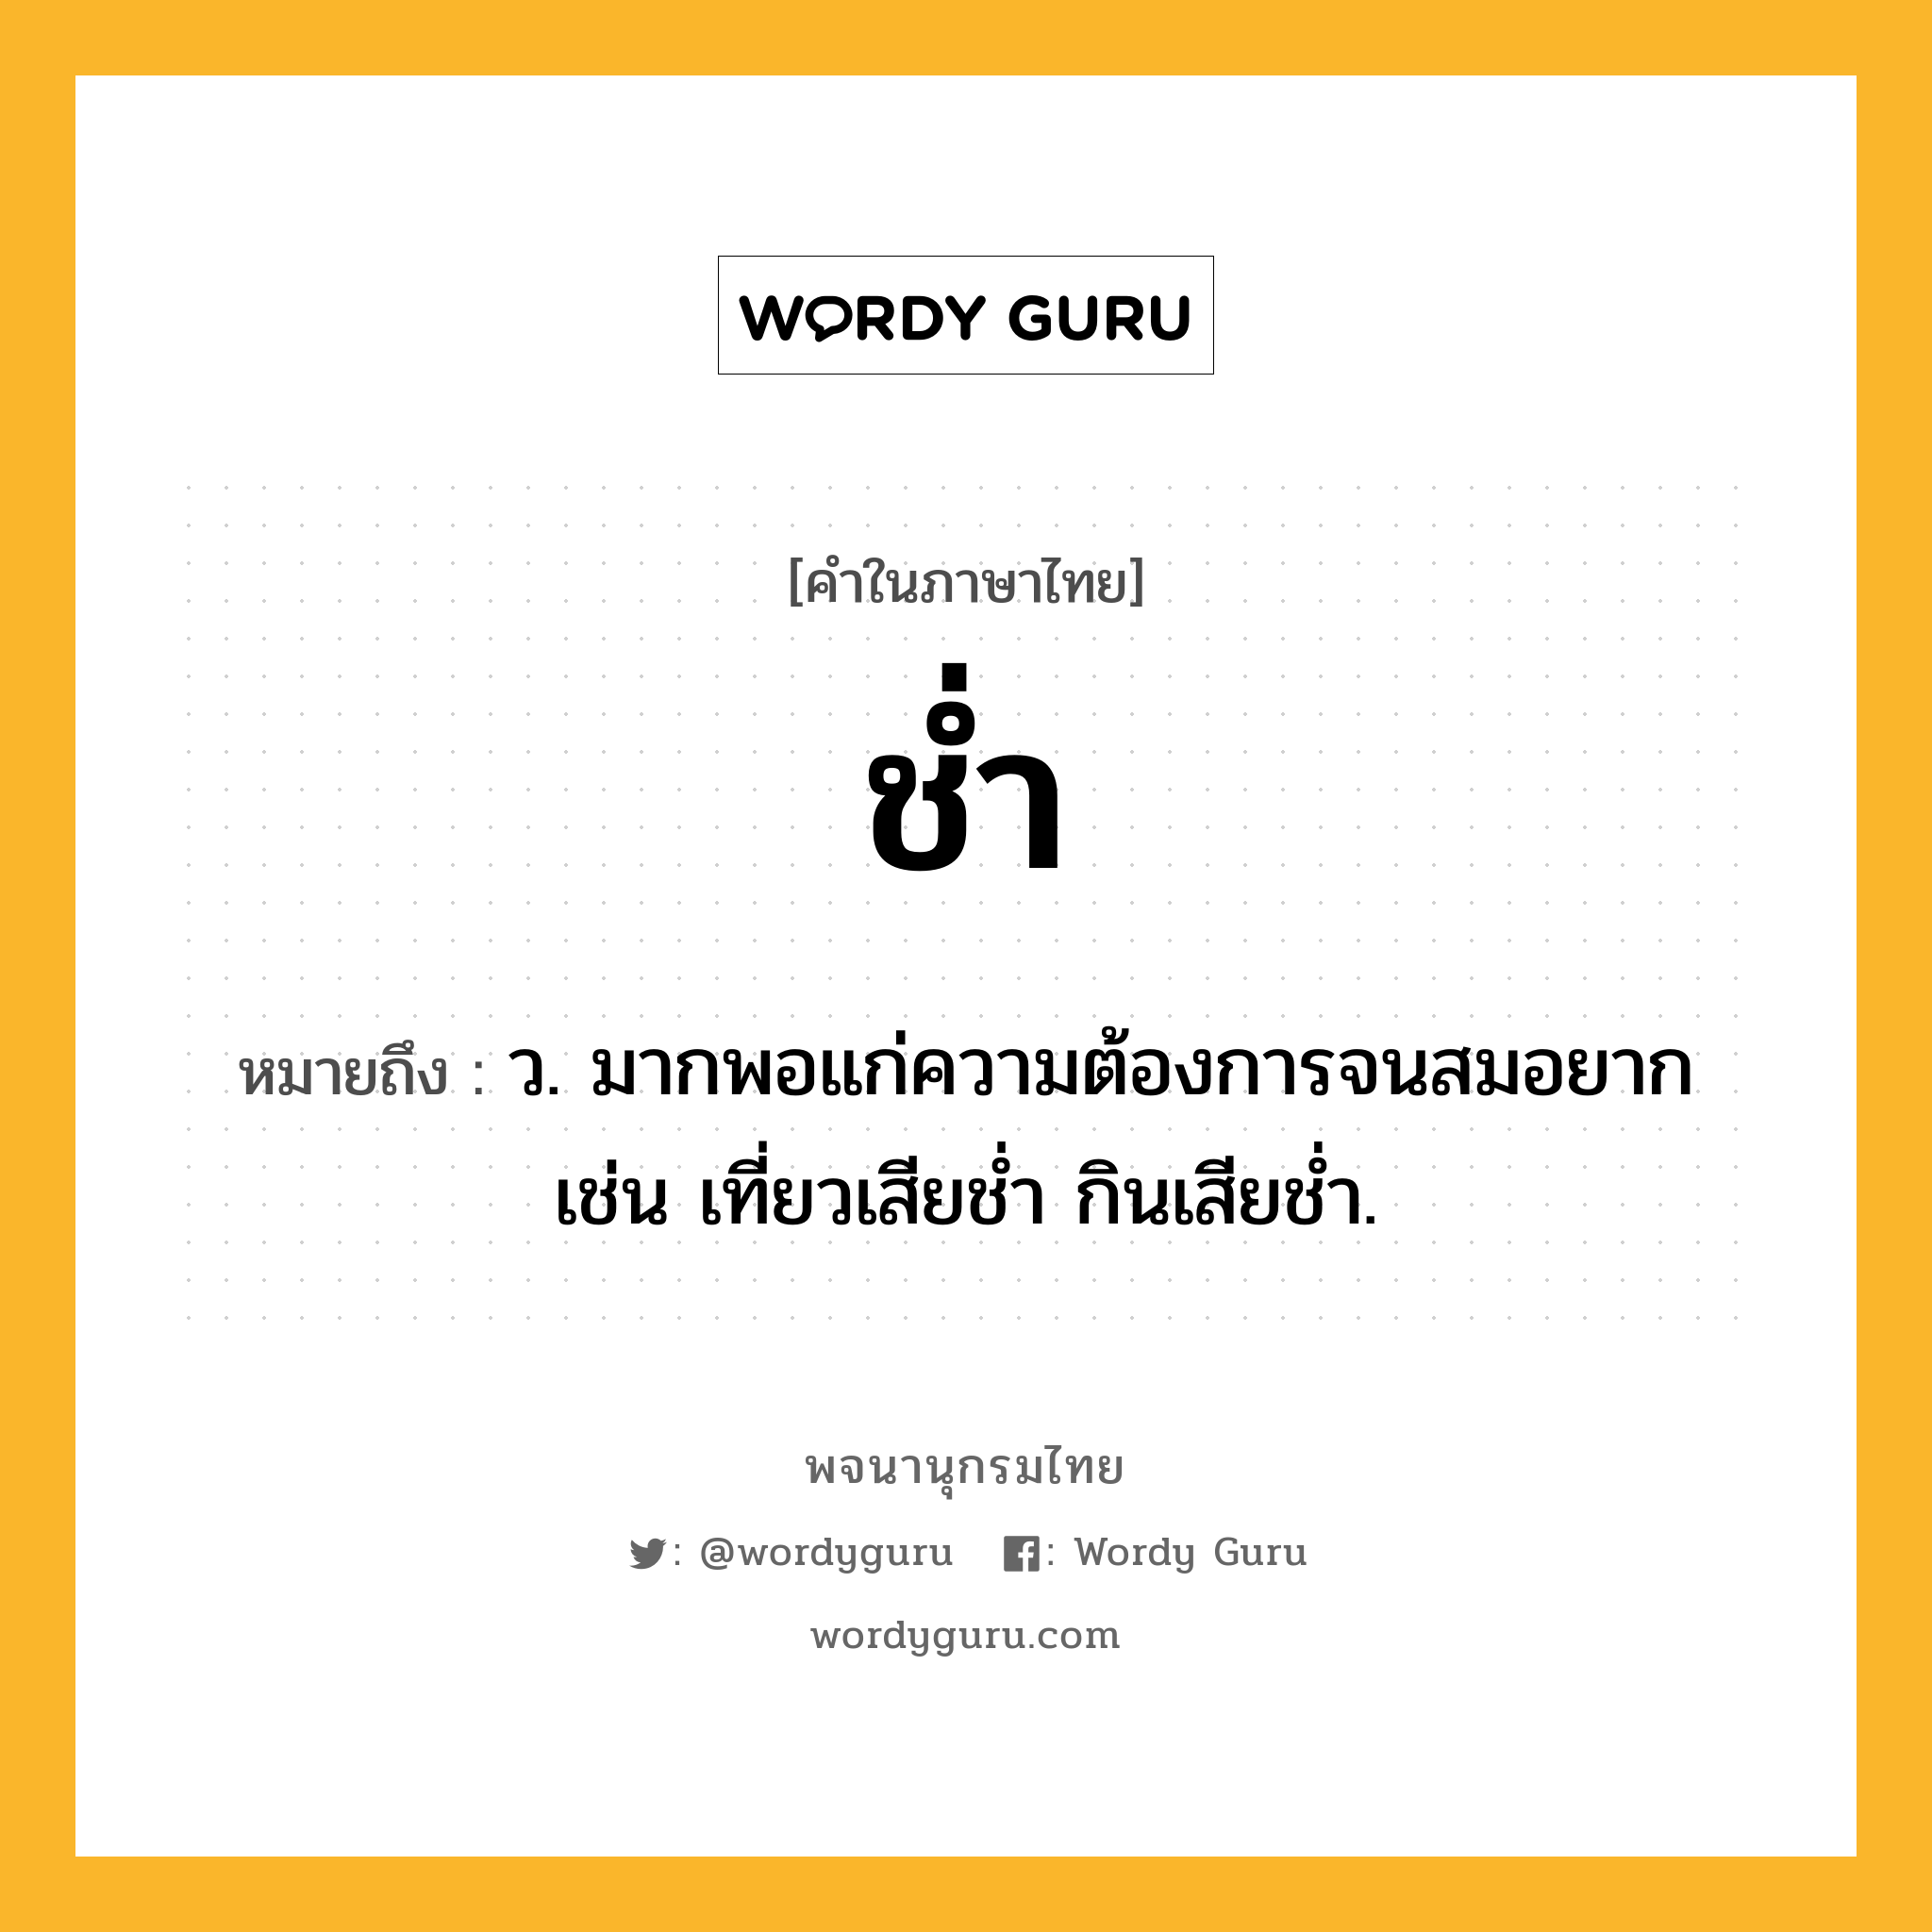 ช่ำ ความหมาย หมายถึงอะไร?, คำในภาษาไทย ช่ำ หมายถึง ว. มากพอแก่ความต้องการจนสมอยาก เช่น เที่ยวเสียชํ่า กินเสียชํ่า.